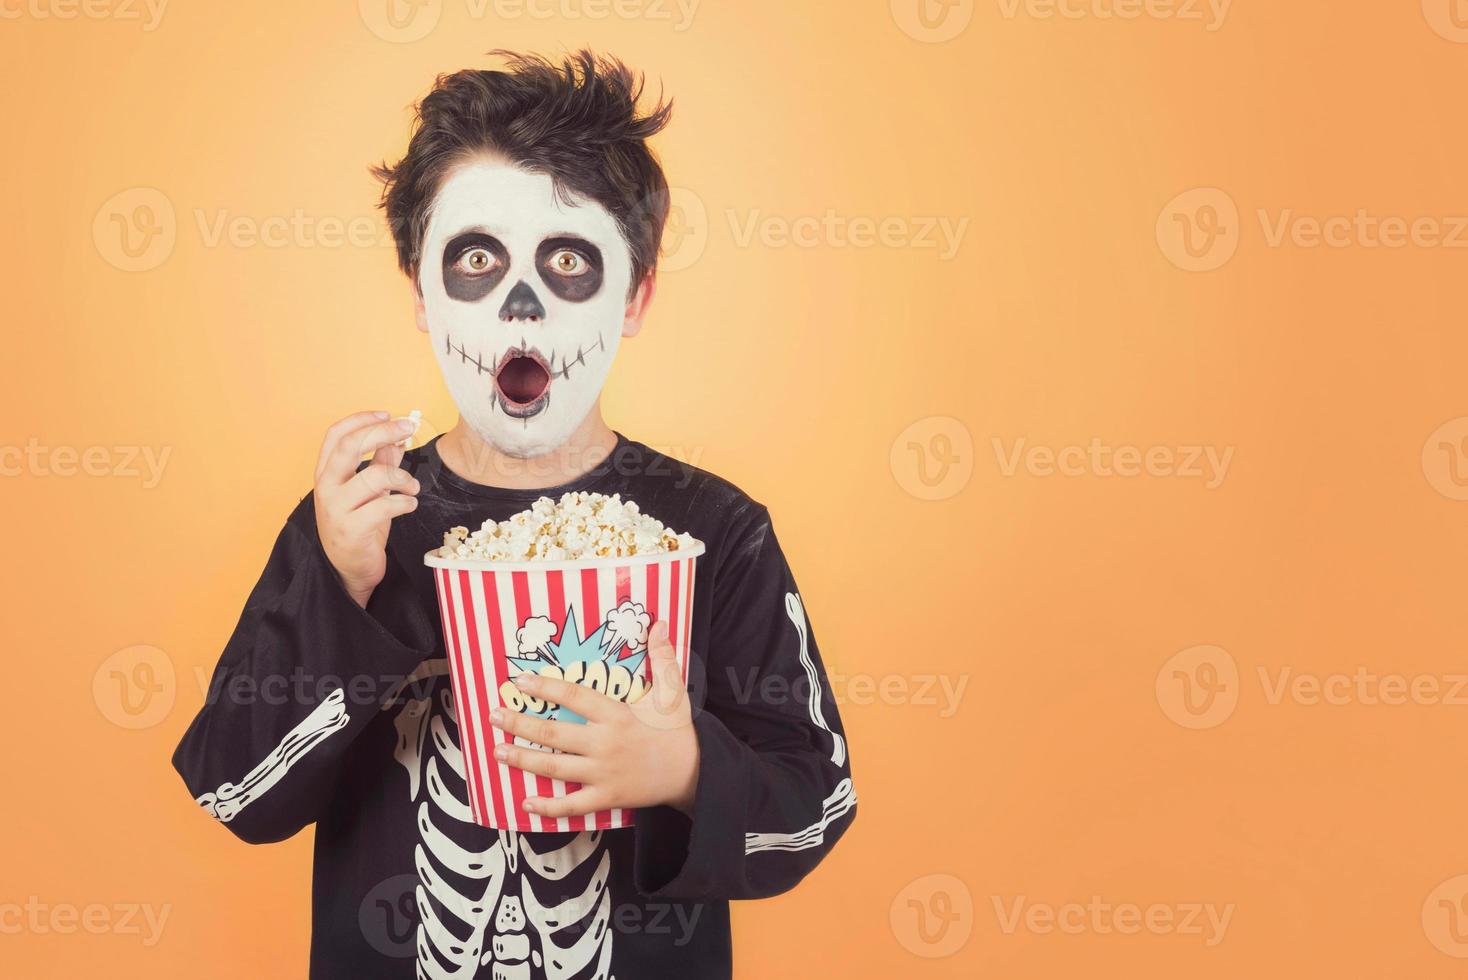 felice halloween.bambino sorpreso in un costume da scheletro con popcorn foto